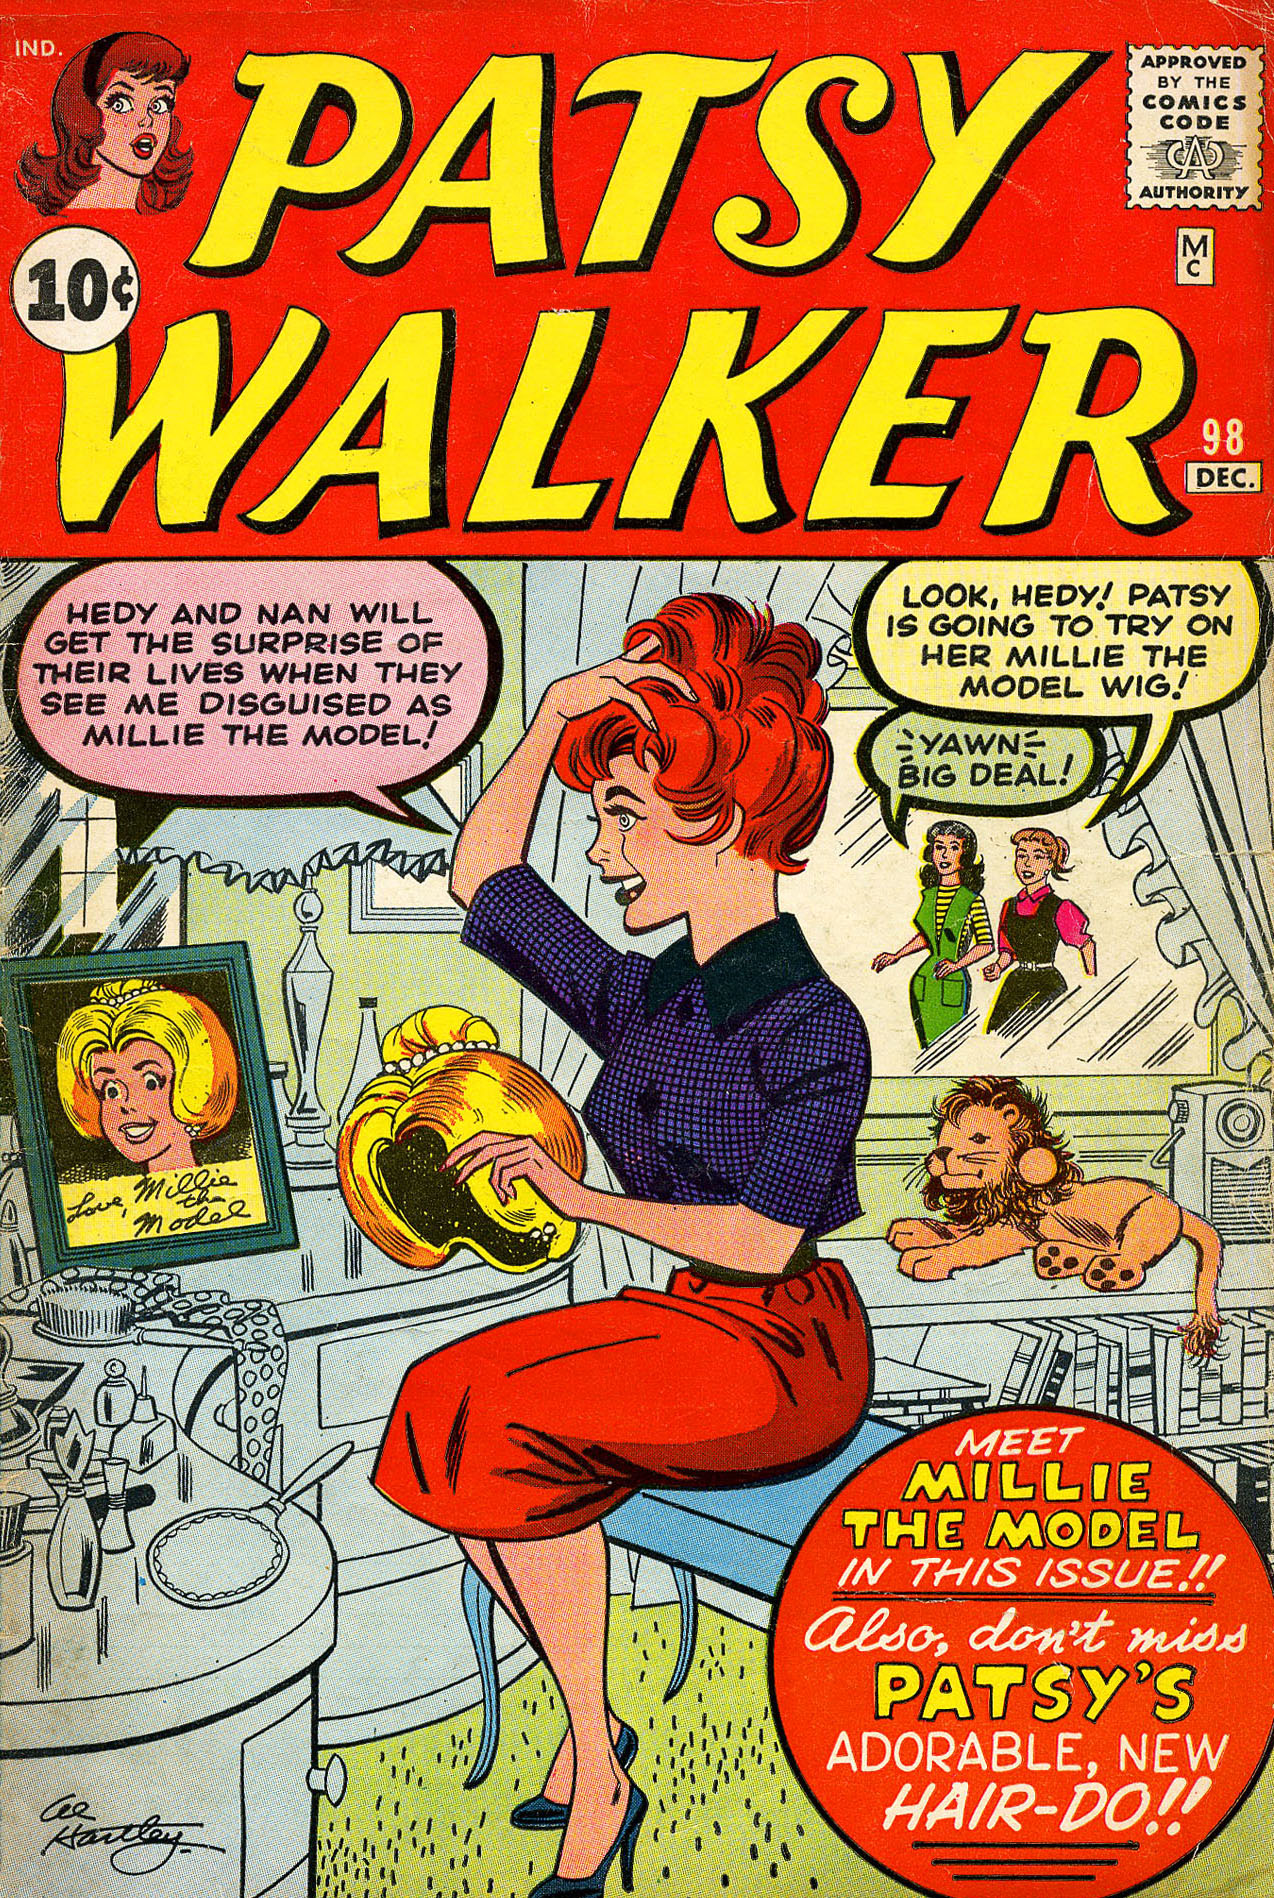 Read online Patsy Walker comic -  Issue #98 - 1